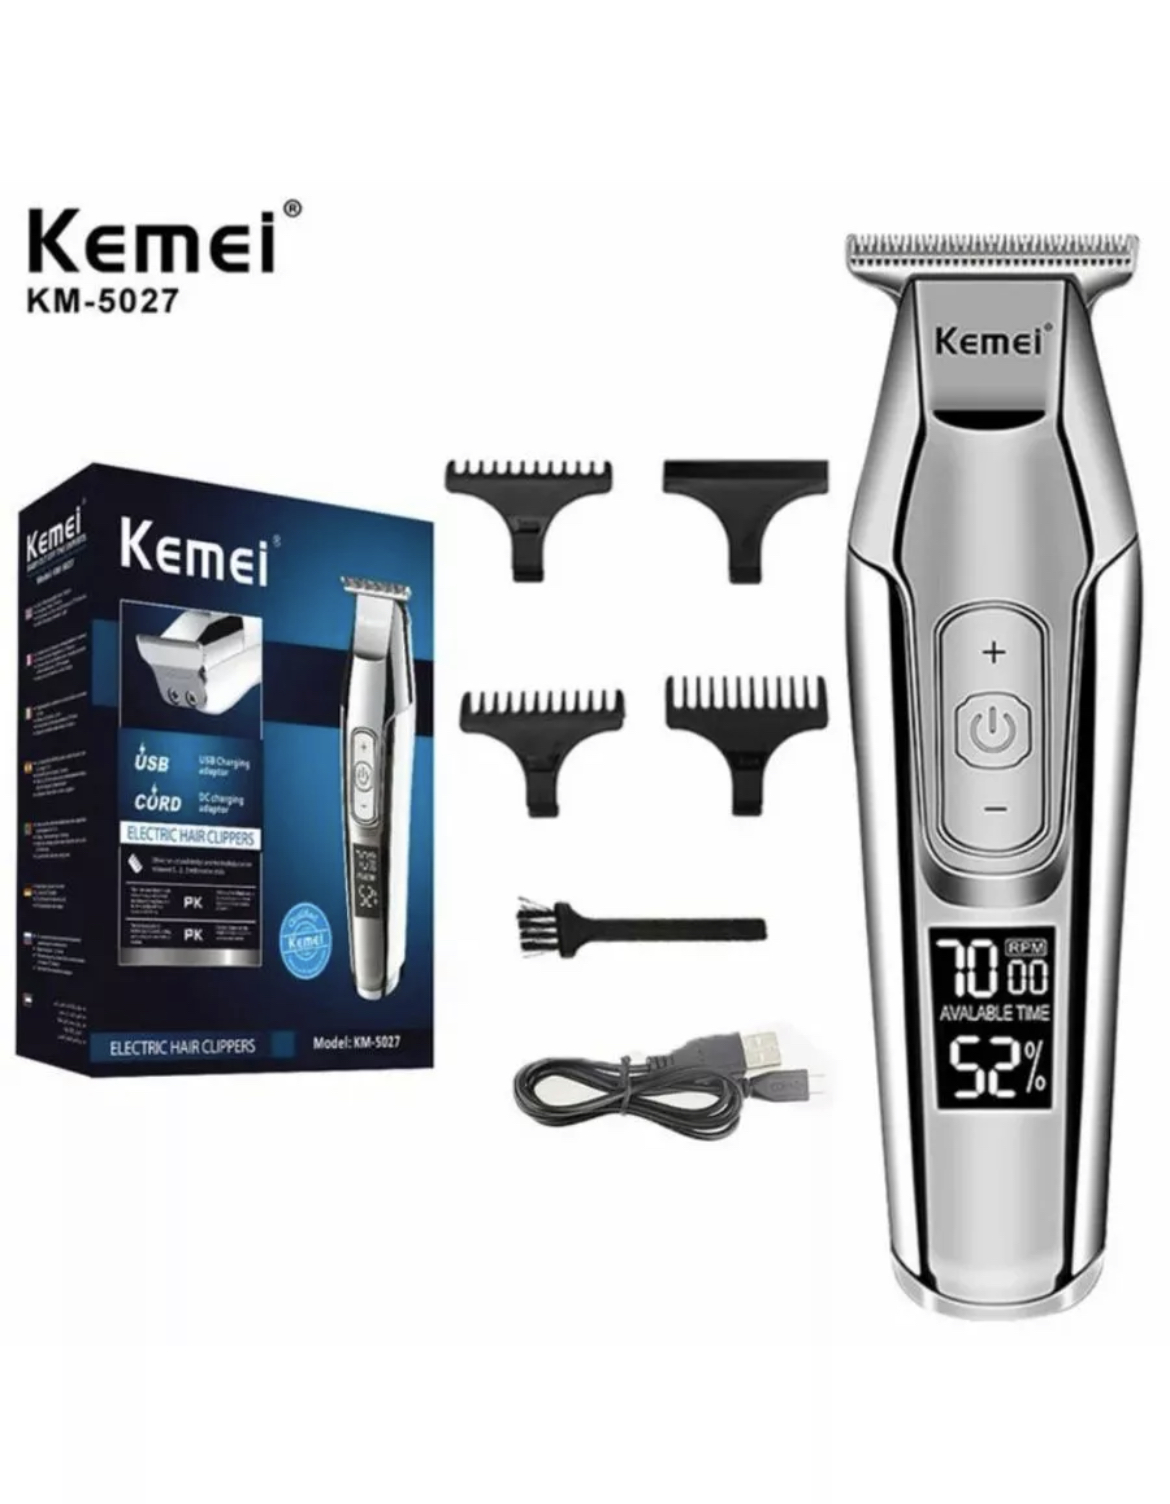 Машинка для стрижки волос Kemei KM-5027 enhcen boost триммер для волос usb зарядное устройство электрическая машинка для стрижки волос